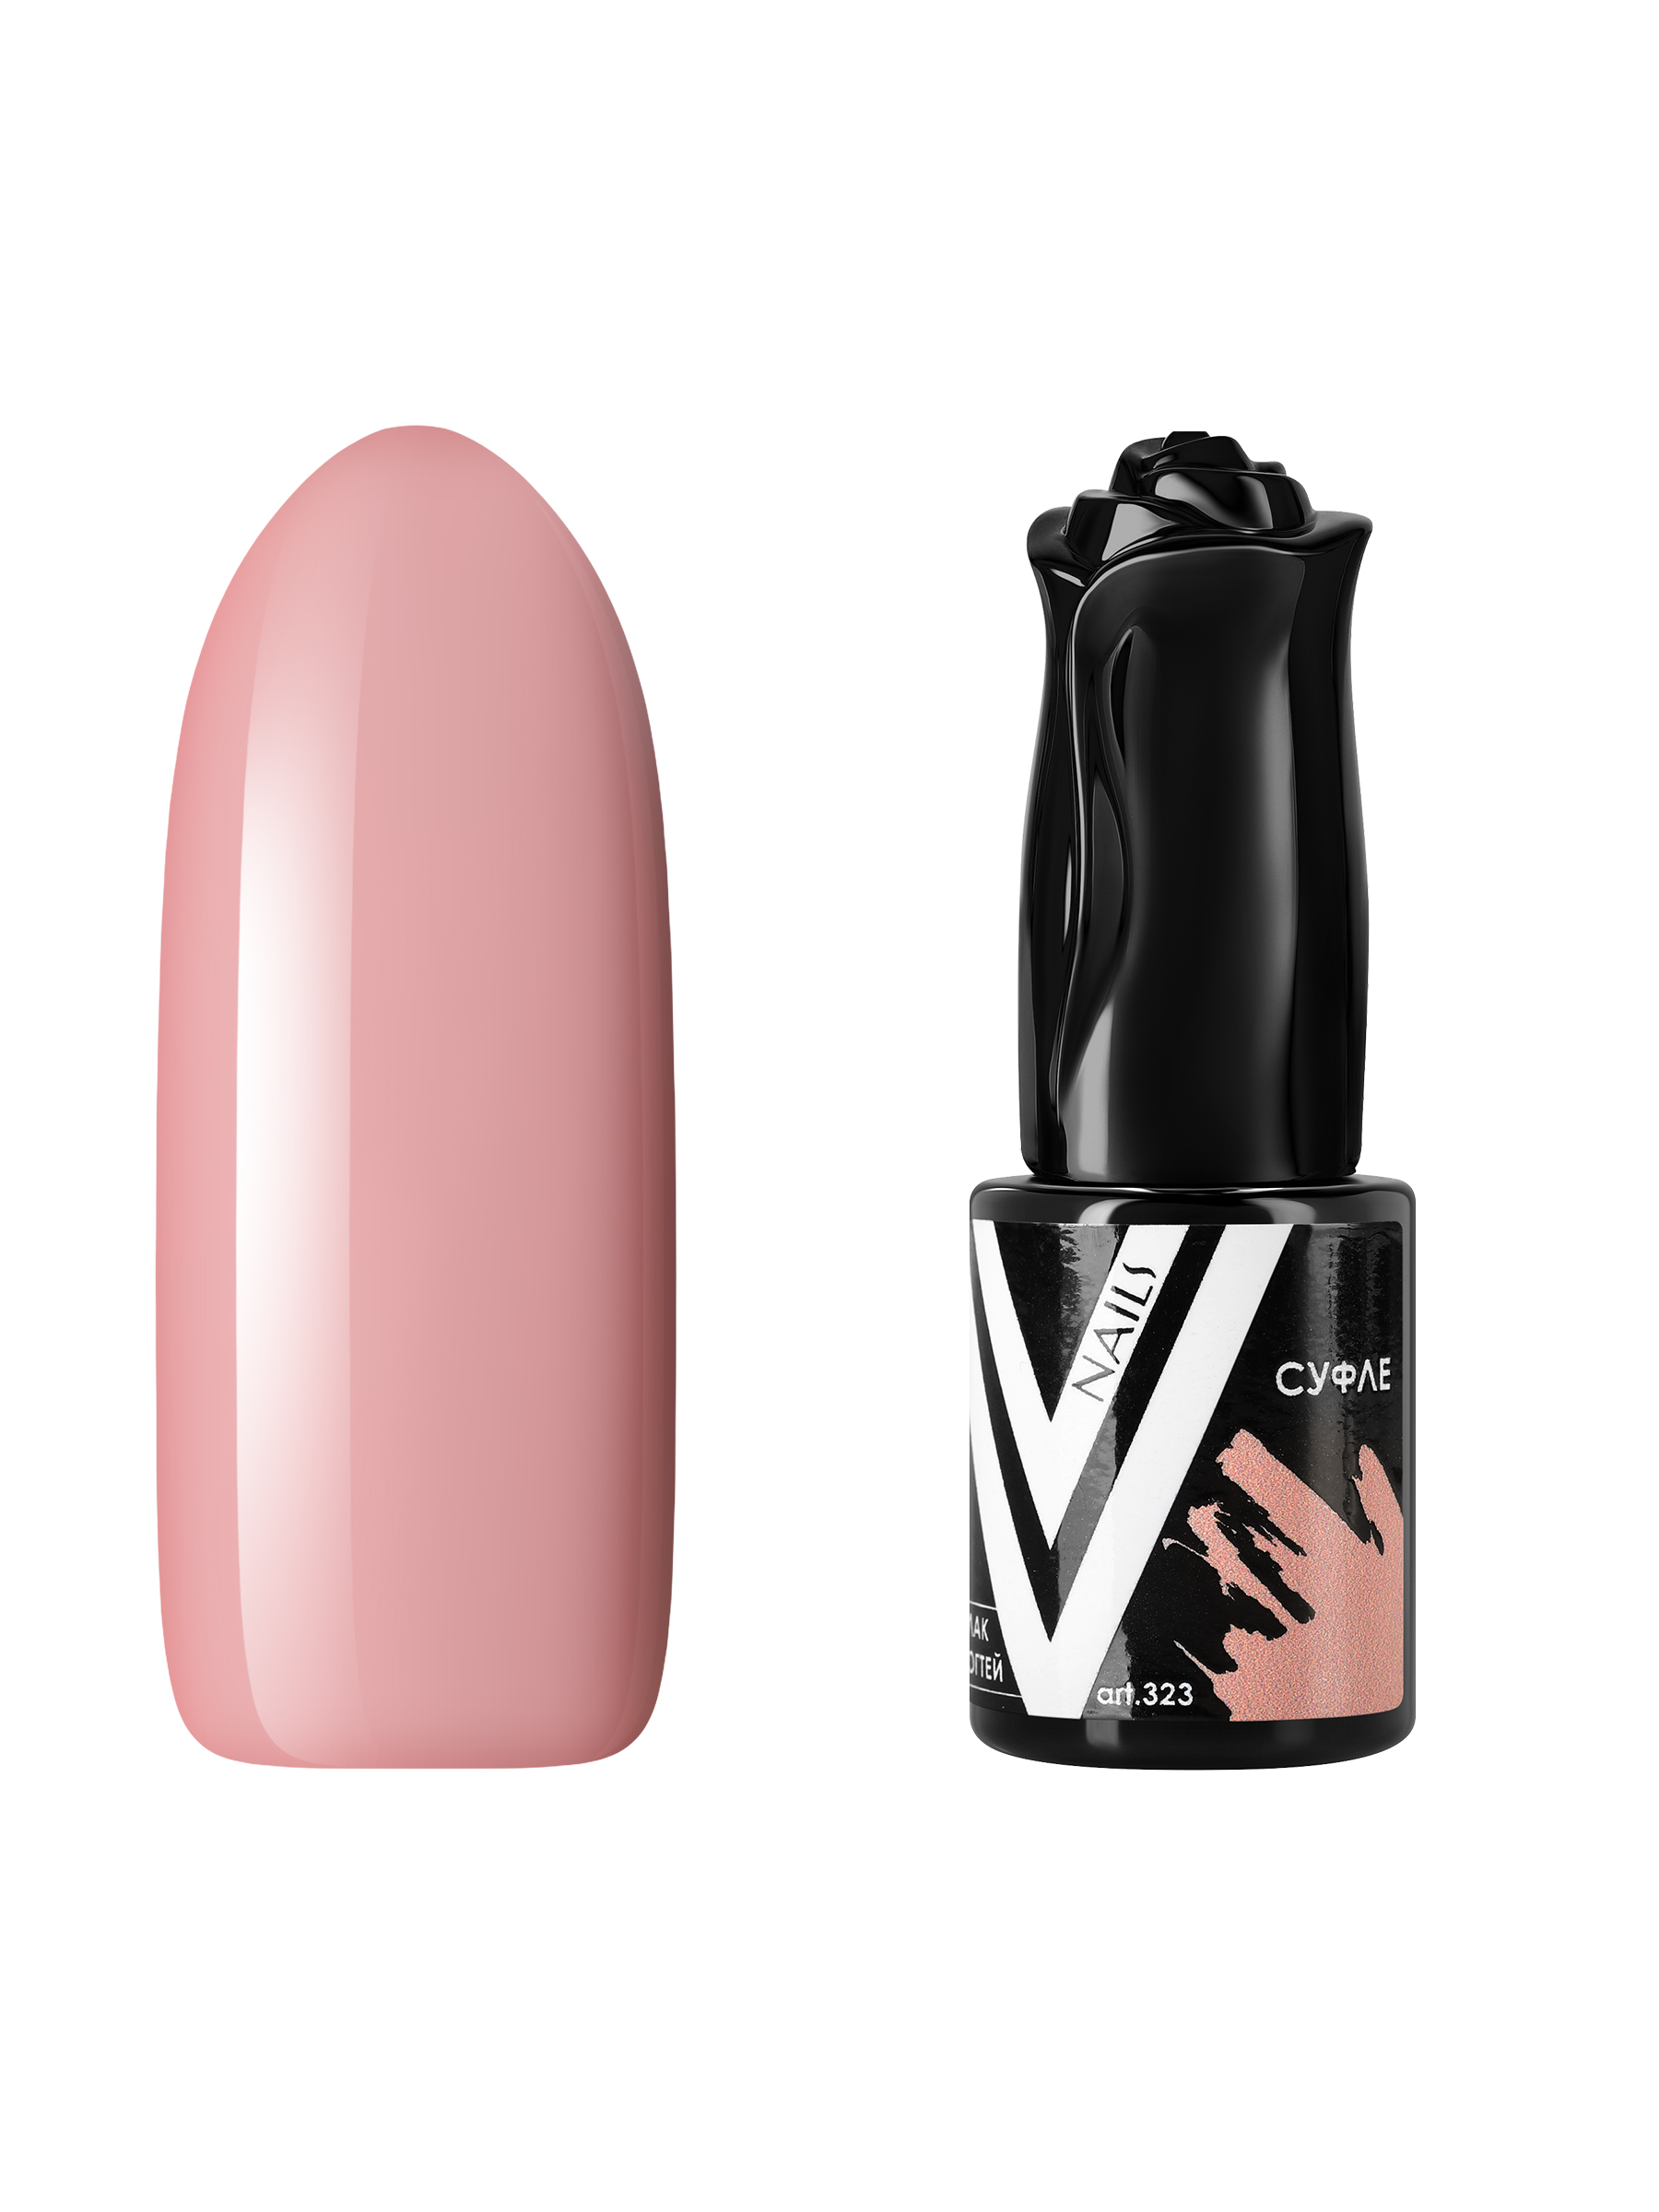 Гель-лак для ногтей Vogue Nails плотный, самовыравнивающийся, светлый, бежевый, 10 мл корзина для хранения плетёная ручной работы доляна совы 46×36×22 см бежевый